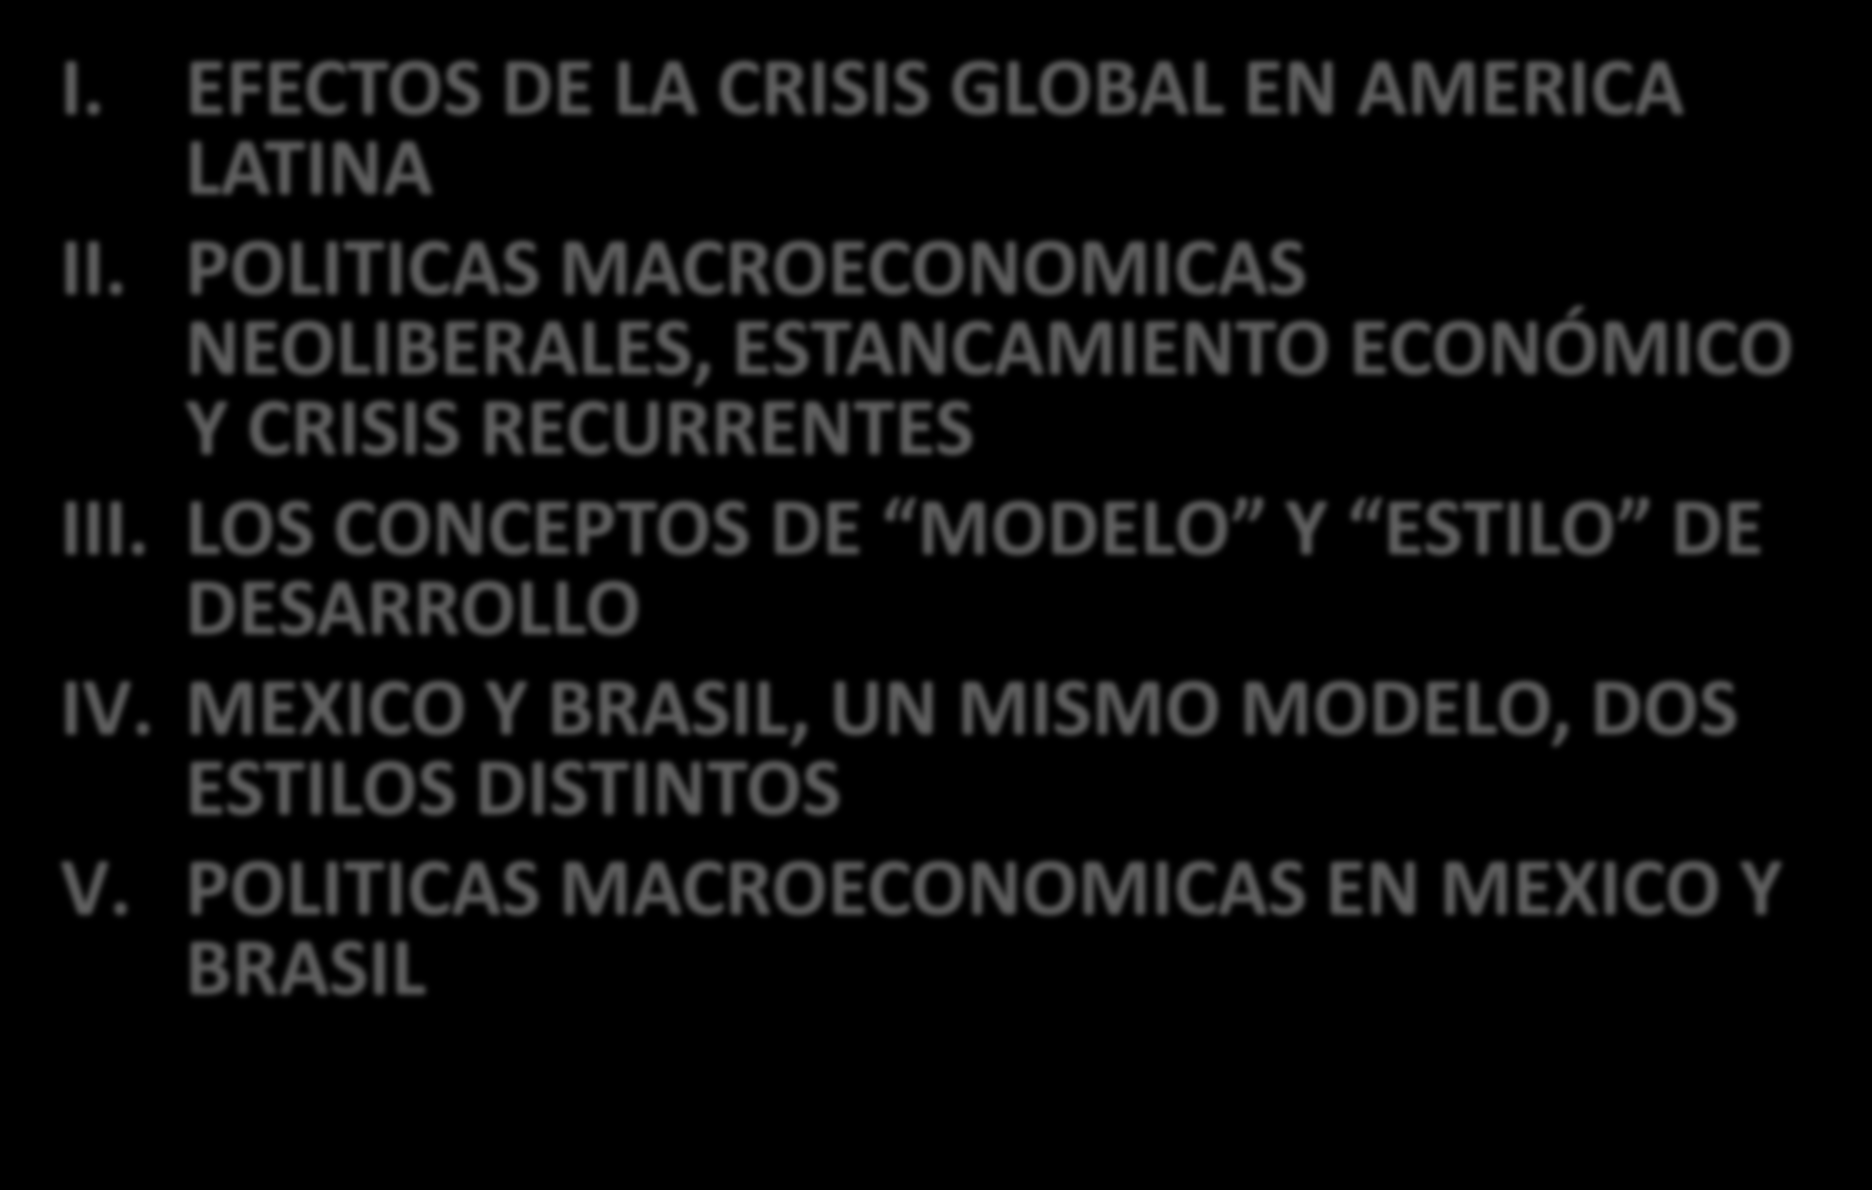 CONTENIDO I. EFECTOS DE LA CRISIS GLOBAL EN AMERICA LATINA II. POLITICAS MACROECONOMICAS NEOLIBERALES, ESTANCAMIENTO ECONÓMICO Y CRISIS RECURRENTES III.